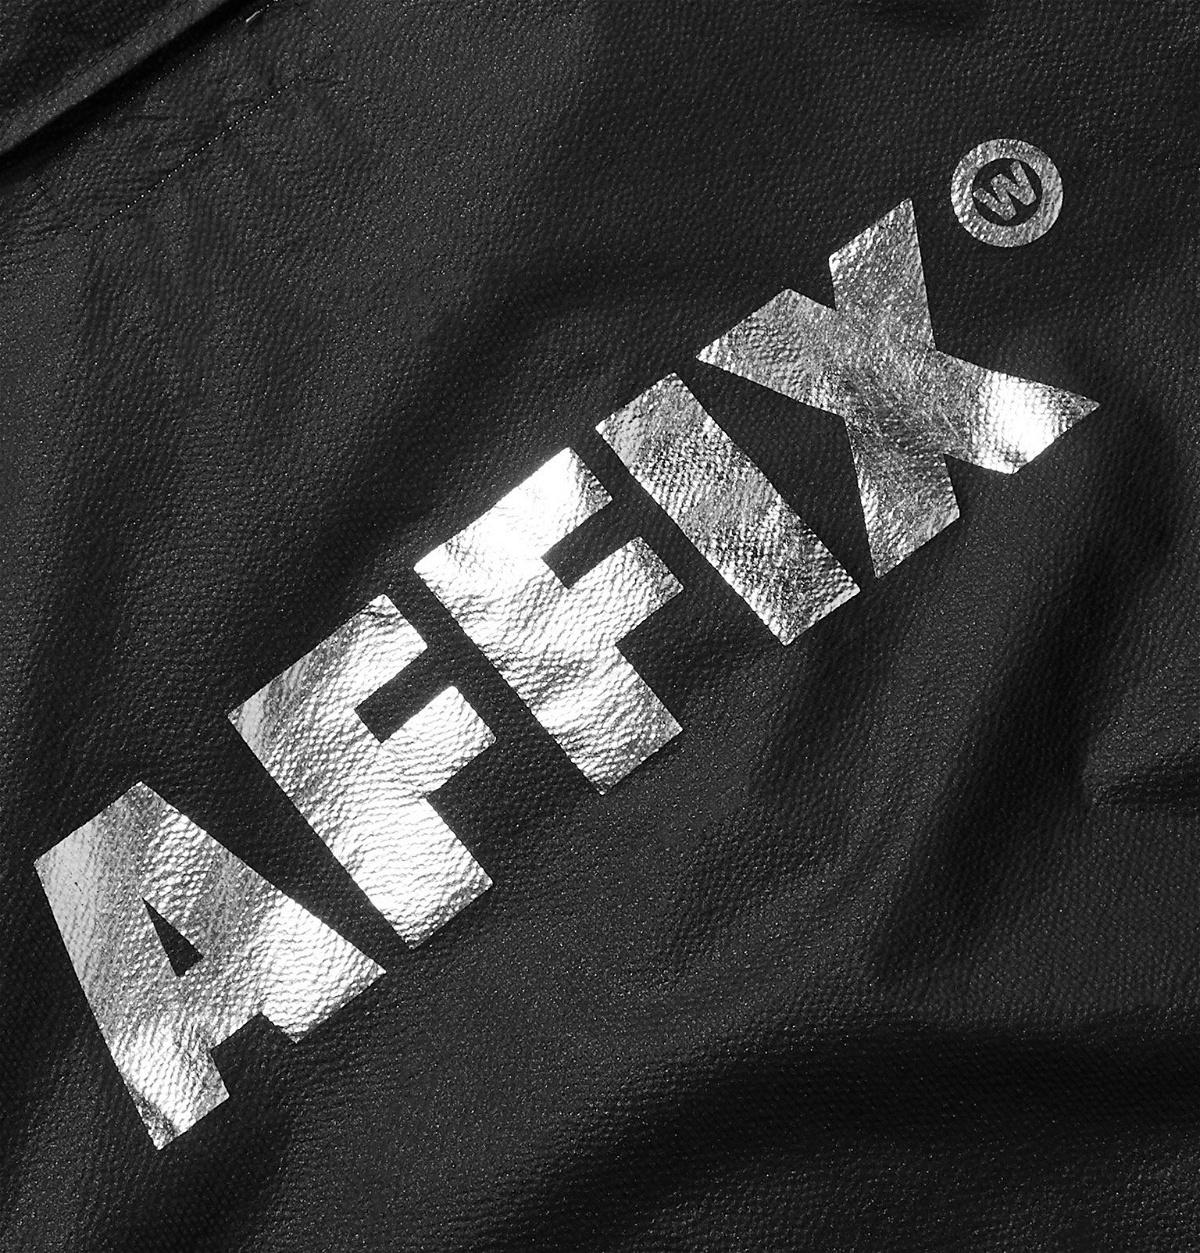 AFFIX - Logo-Print Textured-Nylon Coach Jacket - Black Affix